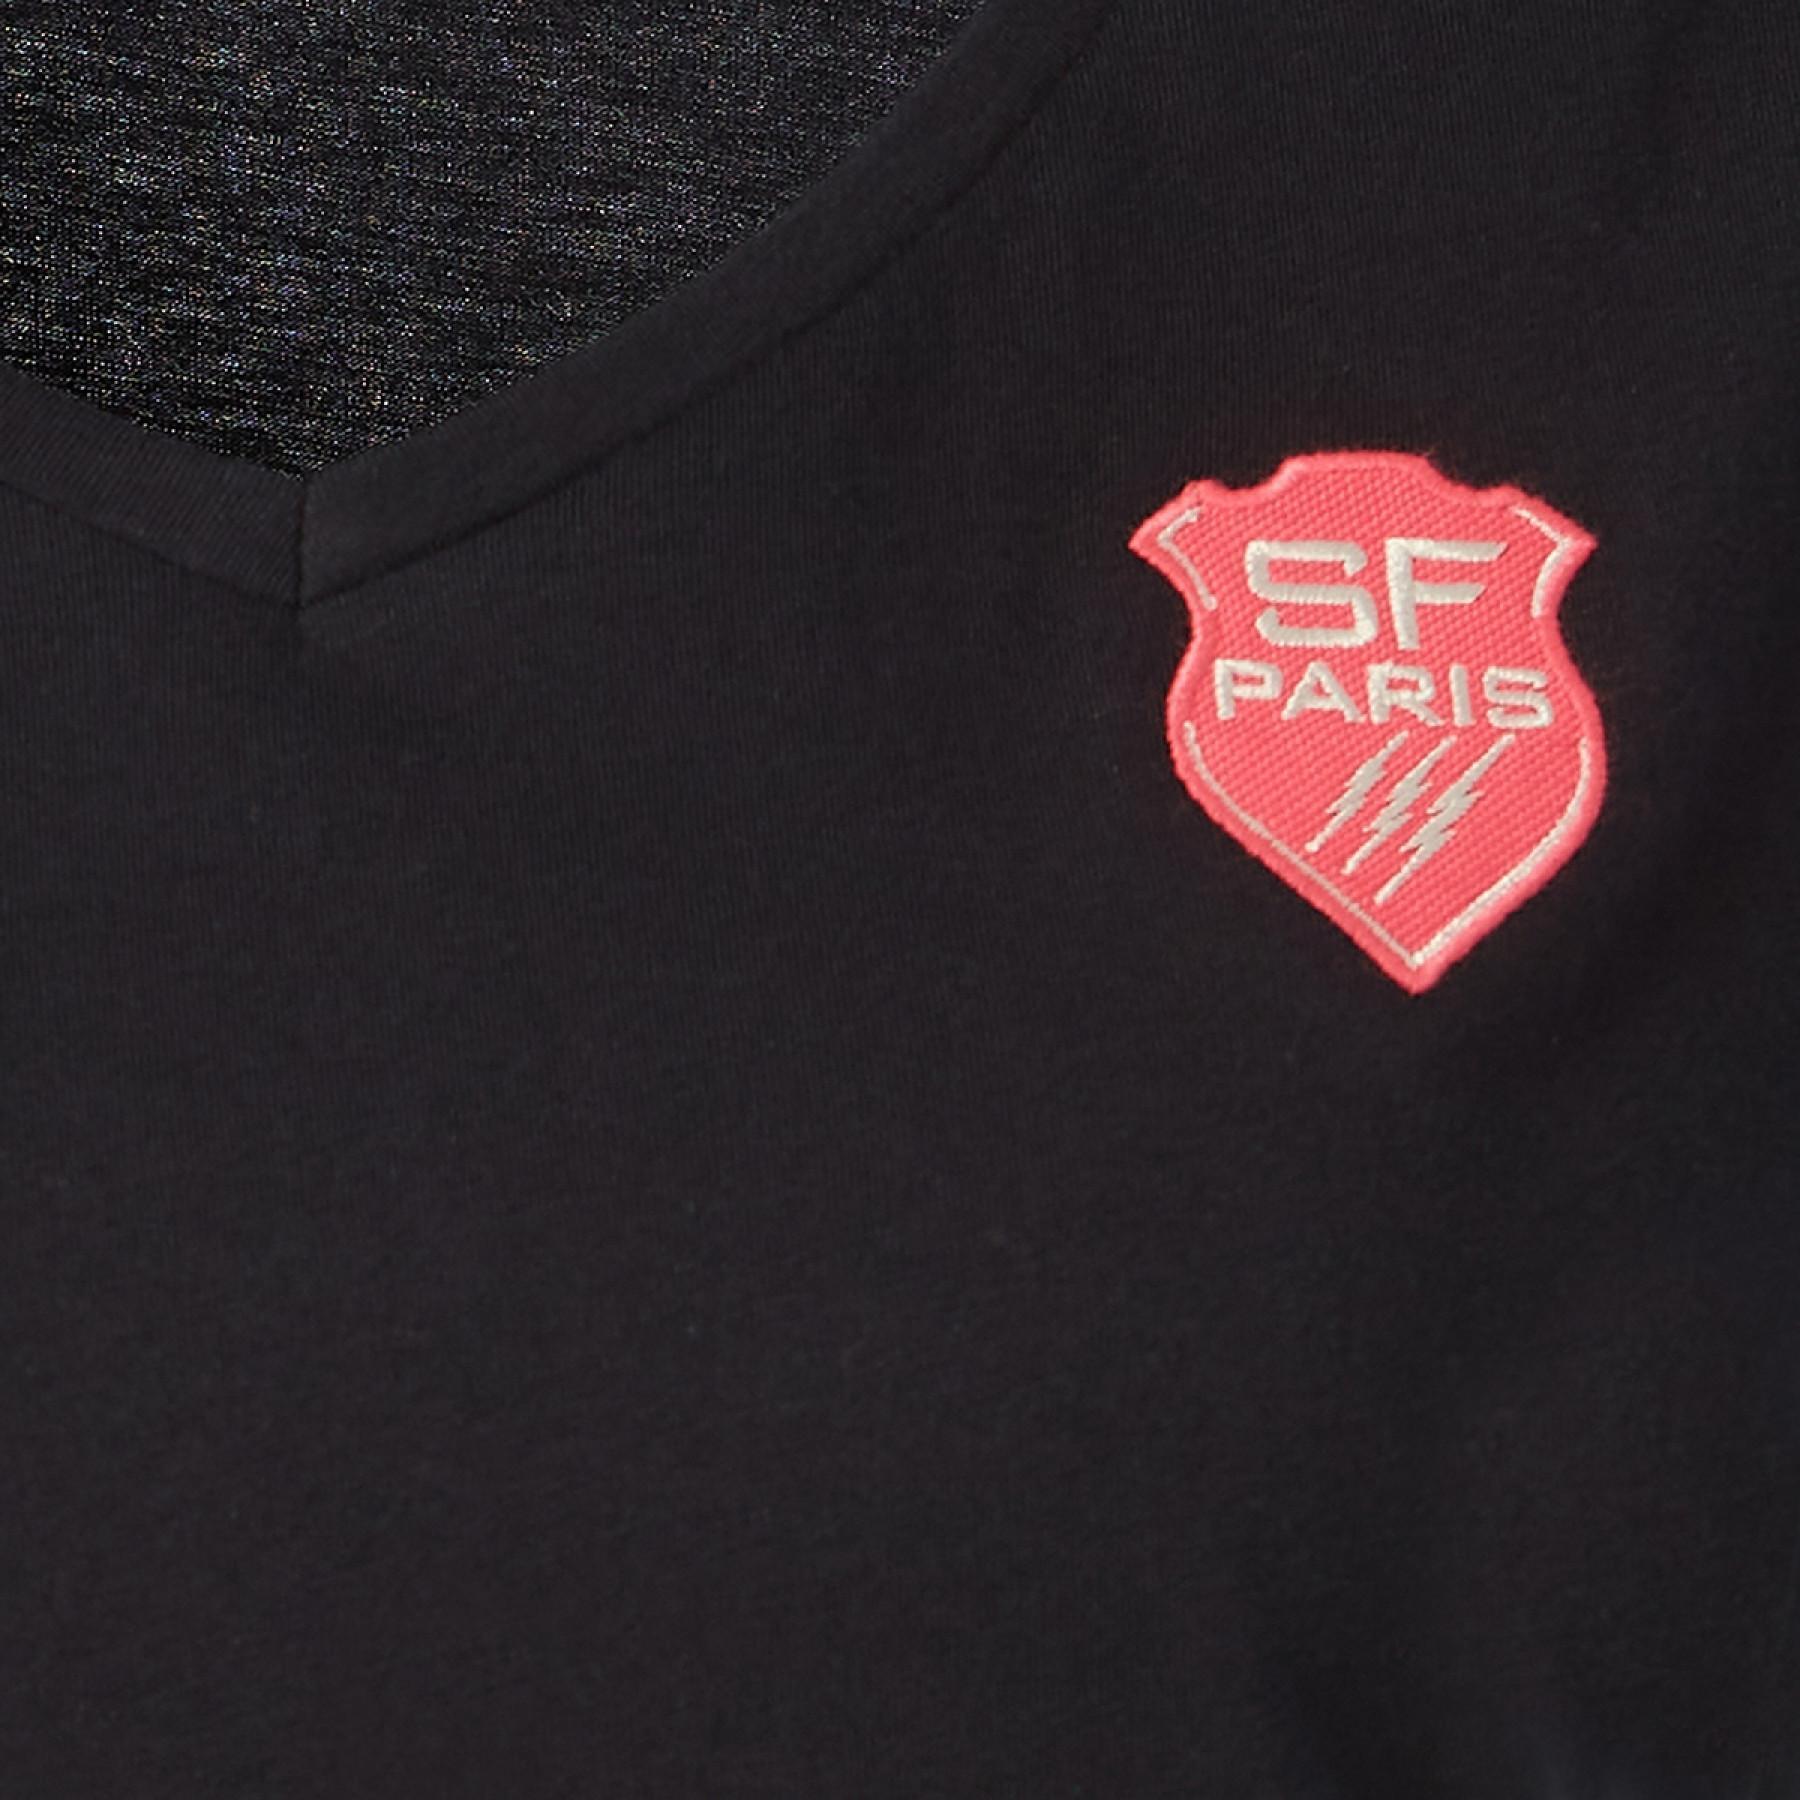 Damen-T-Shirt Stade Français 2020/21 lea